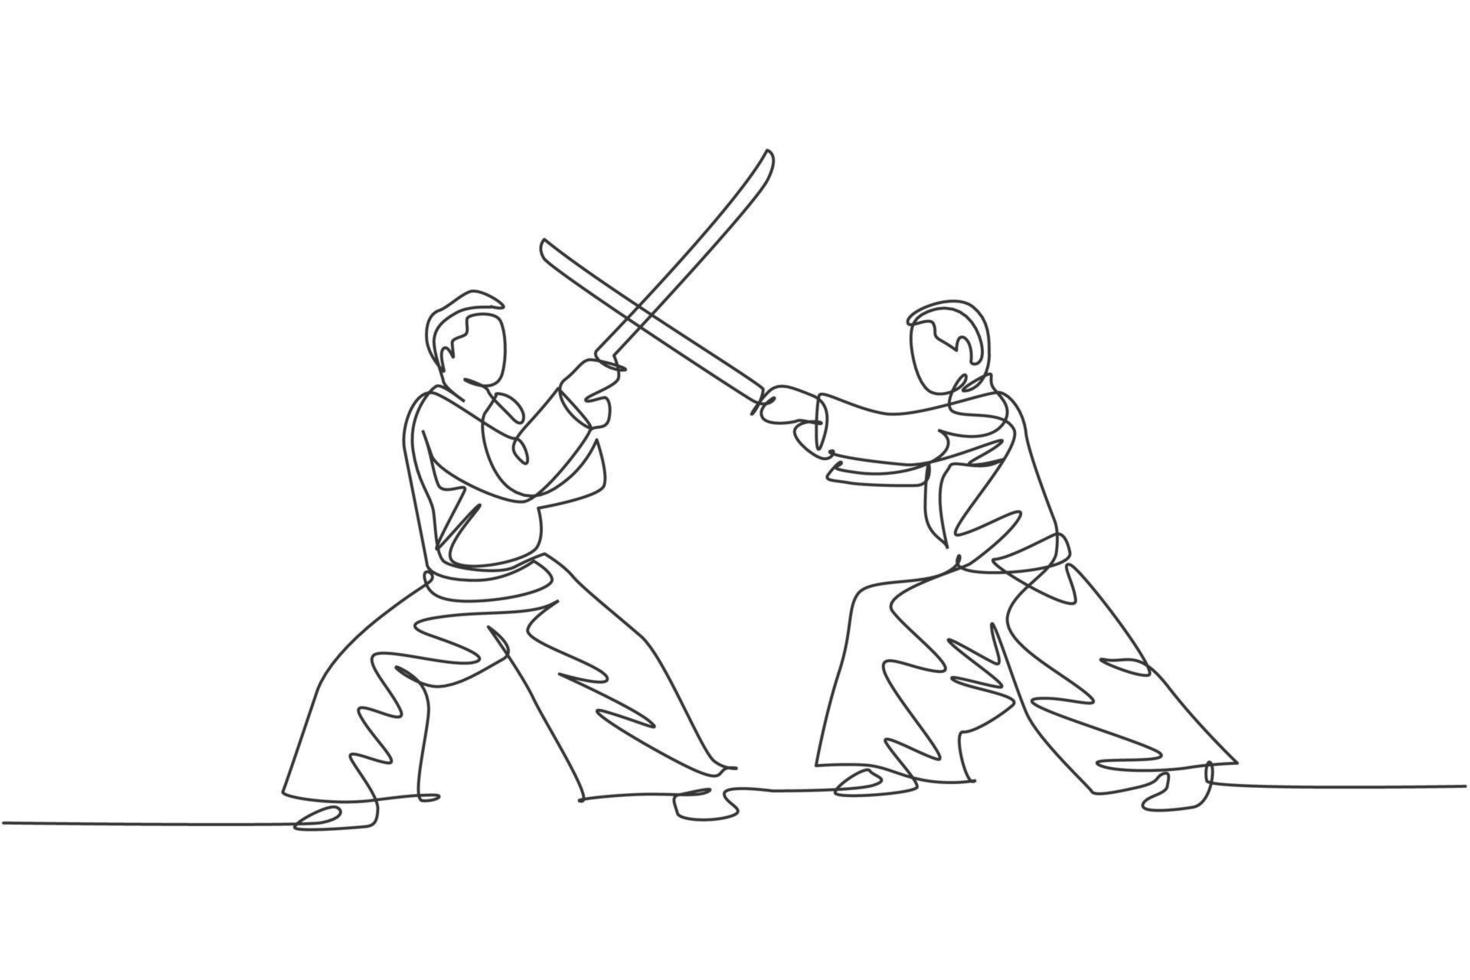 Un solo dibujo de línea de un joven enérgico con kimono ejercicio lucha de aikido con espada de madera en la ilustración de vector de pabellón de deportes. concepto de deporte de estilo de vida saludable. diseño de dibujo de línea continua